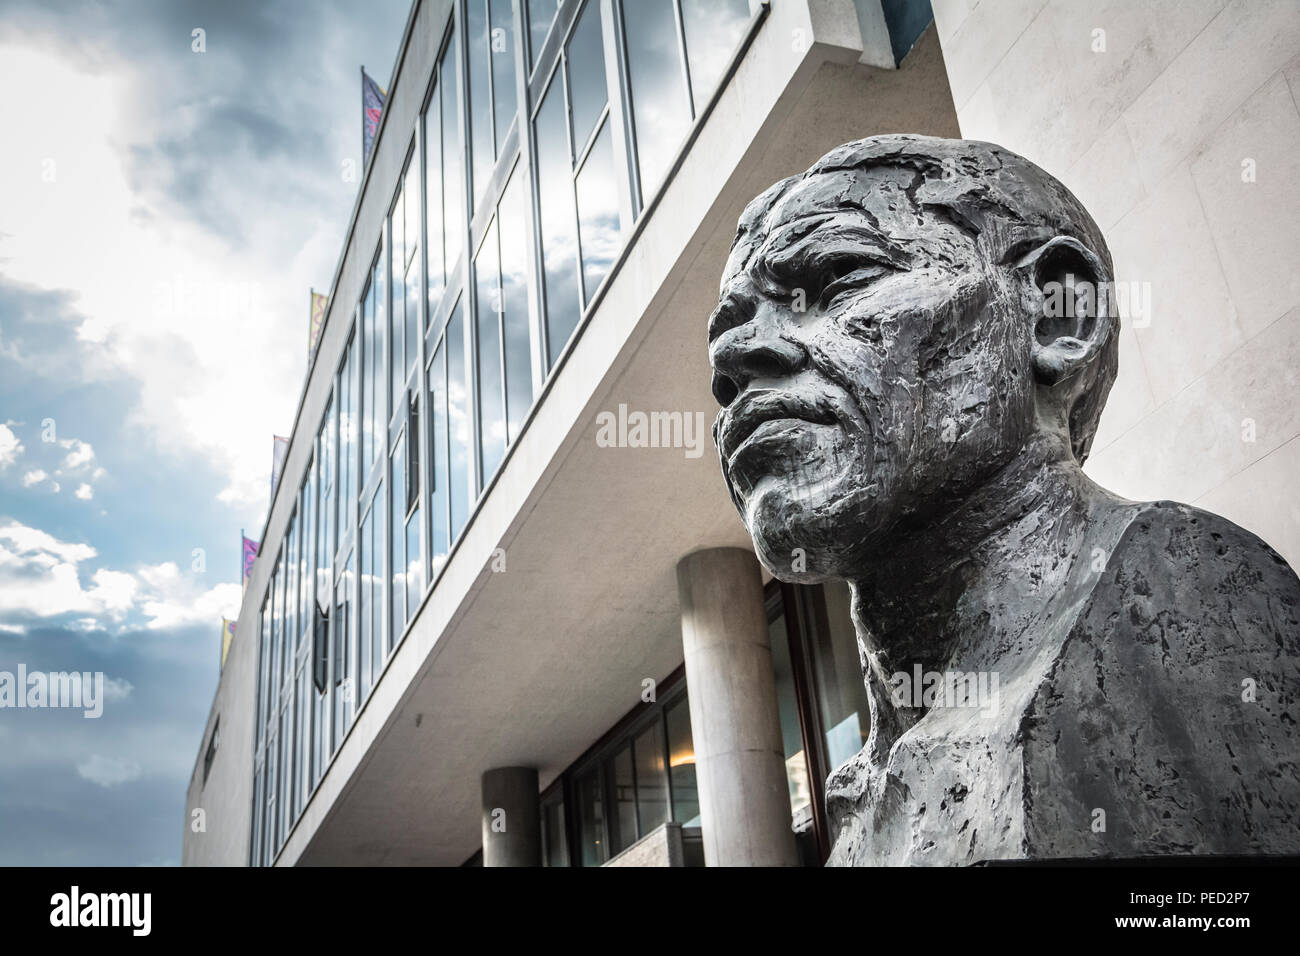 Statua di Ian Walters dell'ex presidente sudafricano Nelson Mandela, fuori dal Royal Festival Hall, Londra, Inghilterra, Regno Unito. Foto Stock